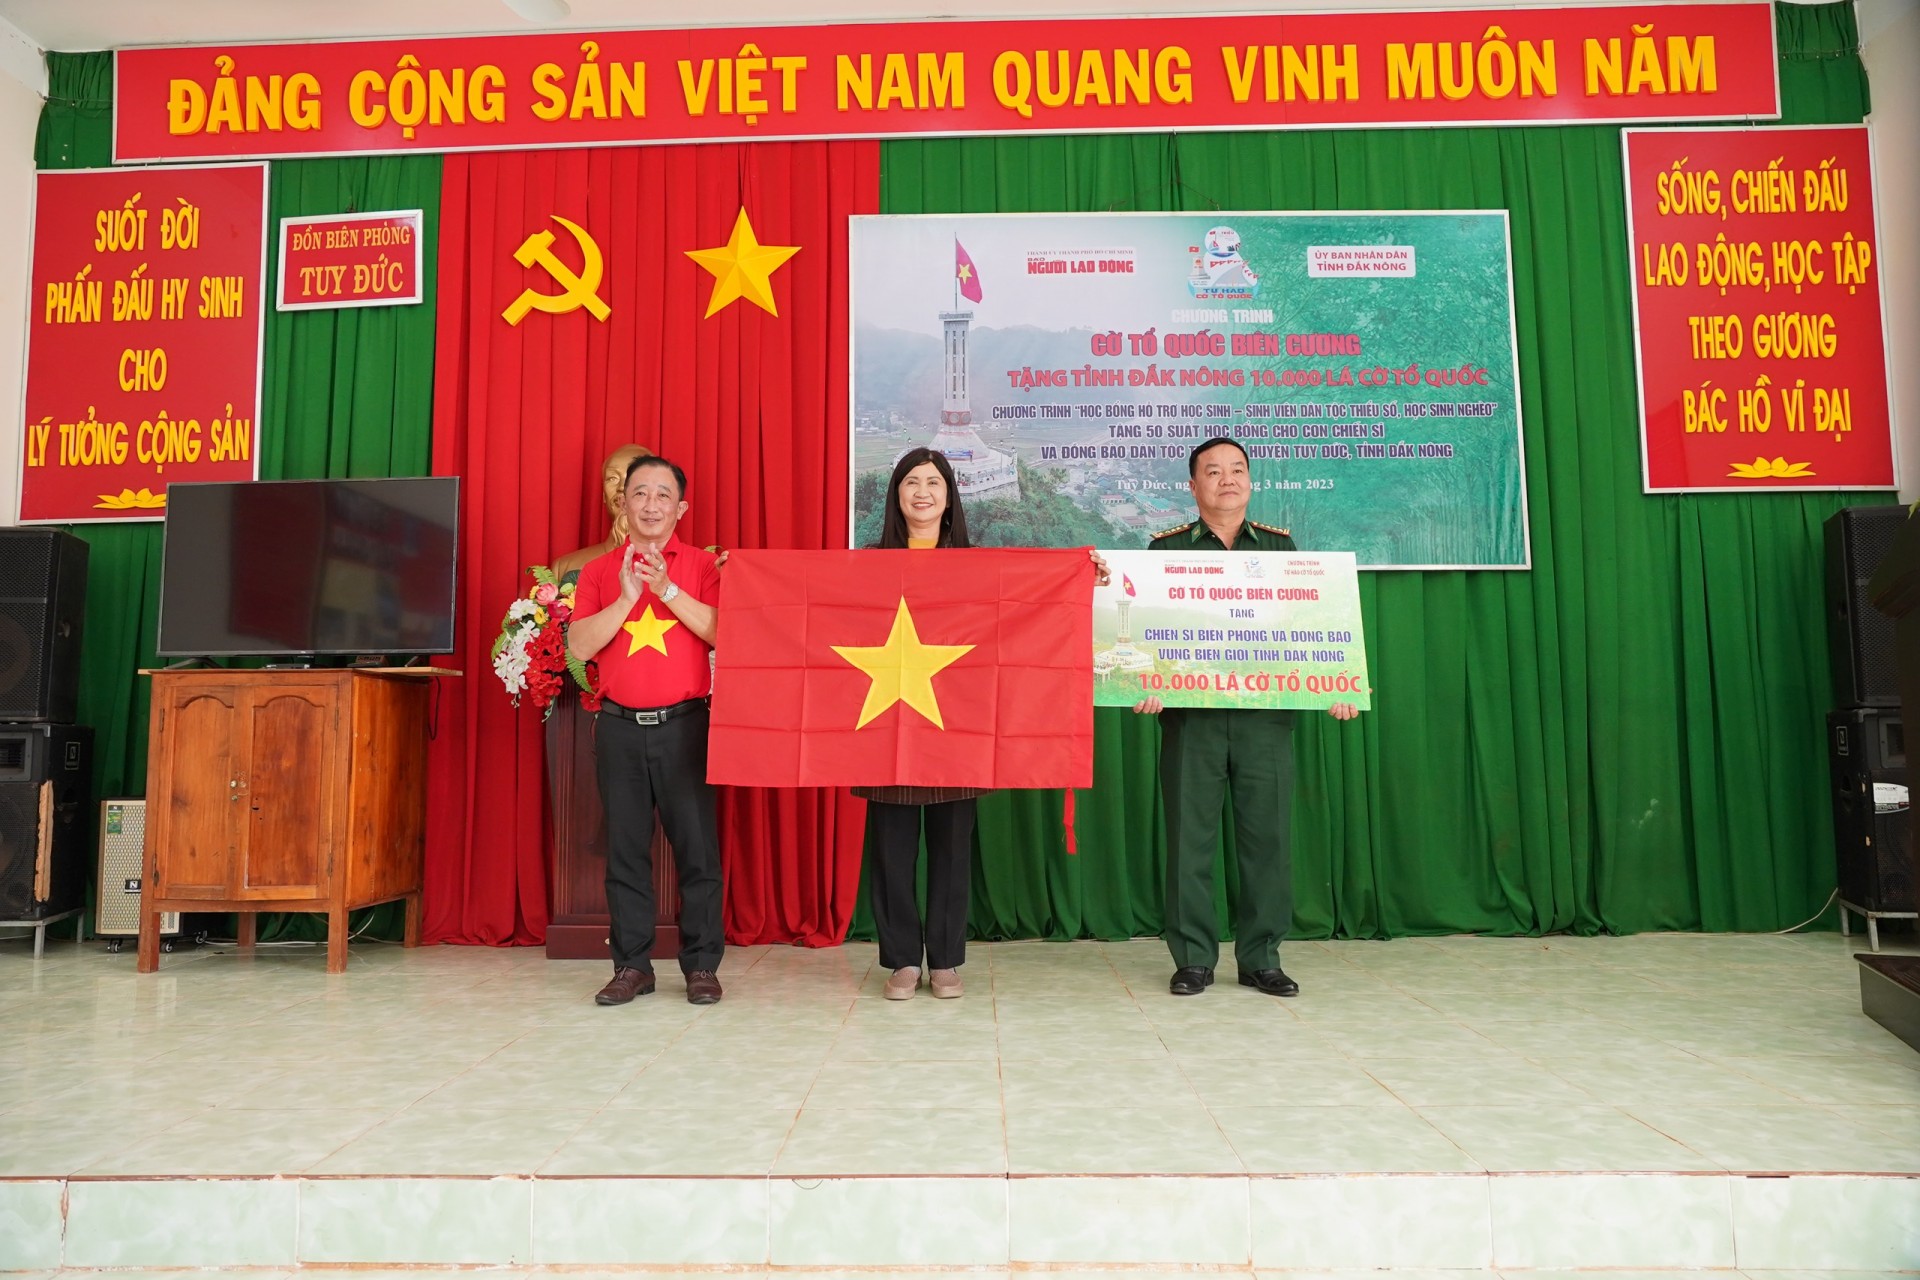 Đắk Nông: Trao 10.000 lá cờ Tổ quốc và tặng quà cho học sinh nghèo vùng biên